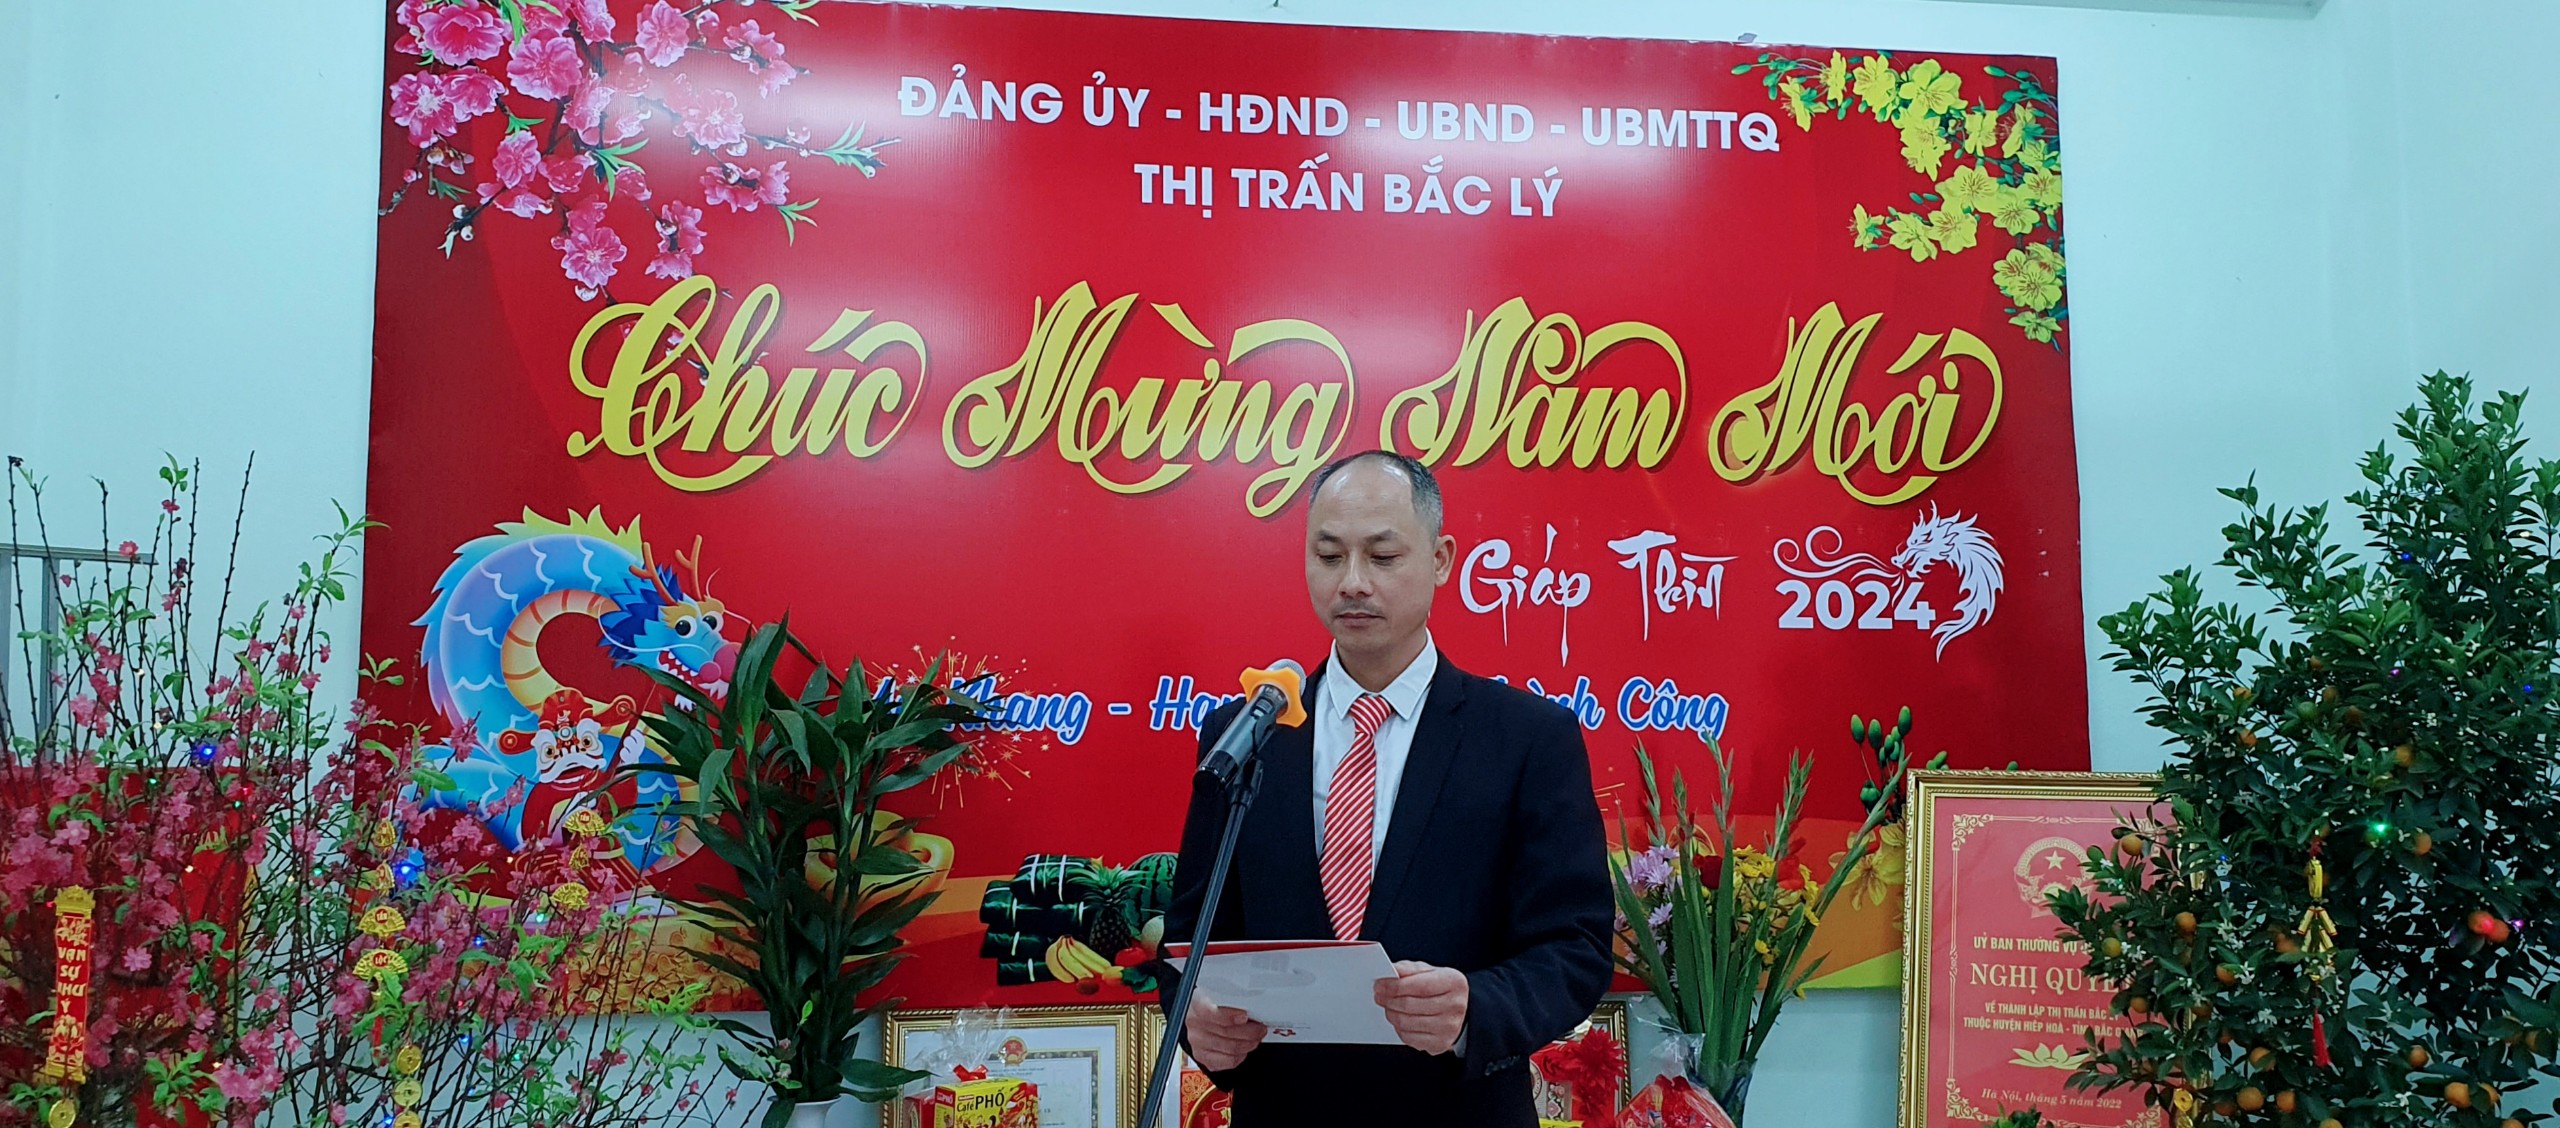 Chủ tịch UBND thị trấn Bắc Lý gửi lời chúc tết